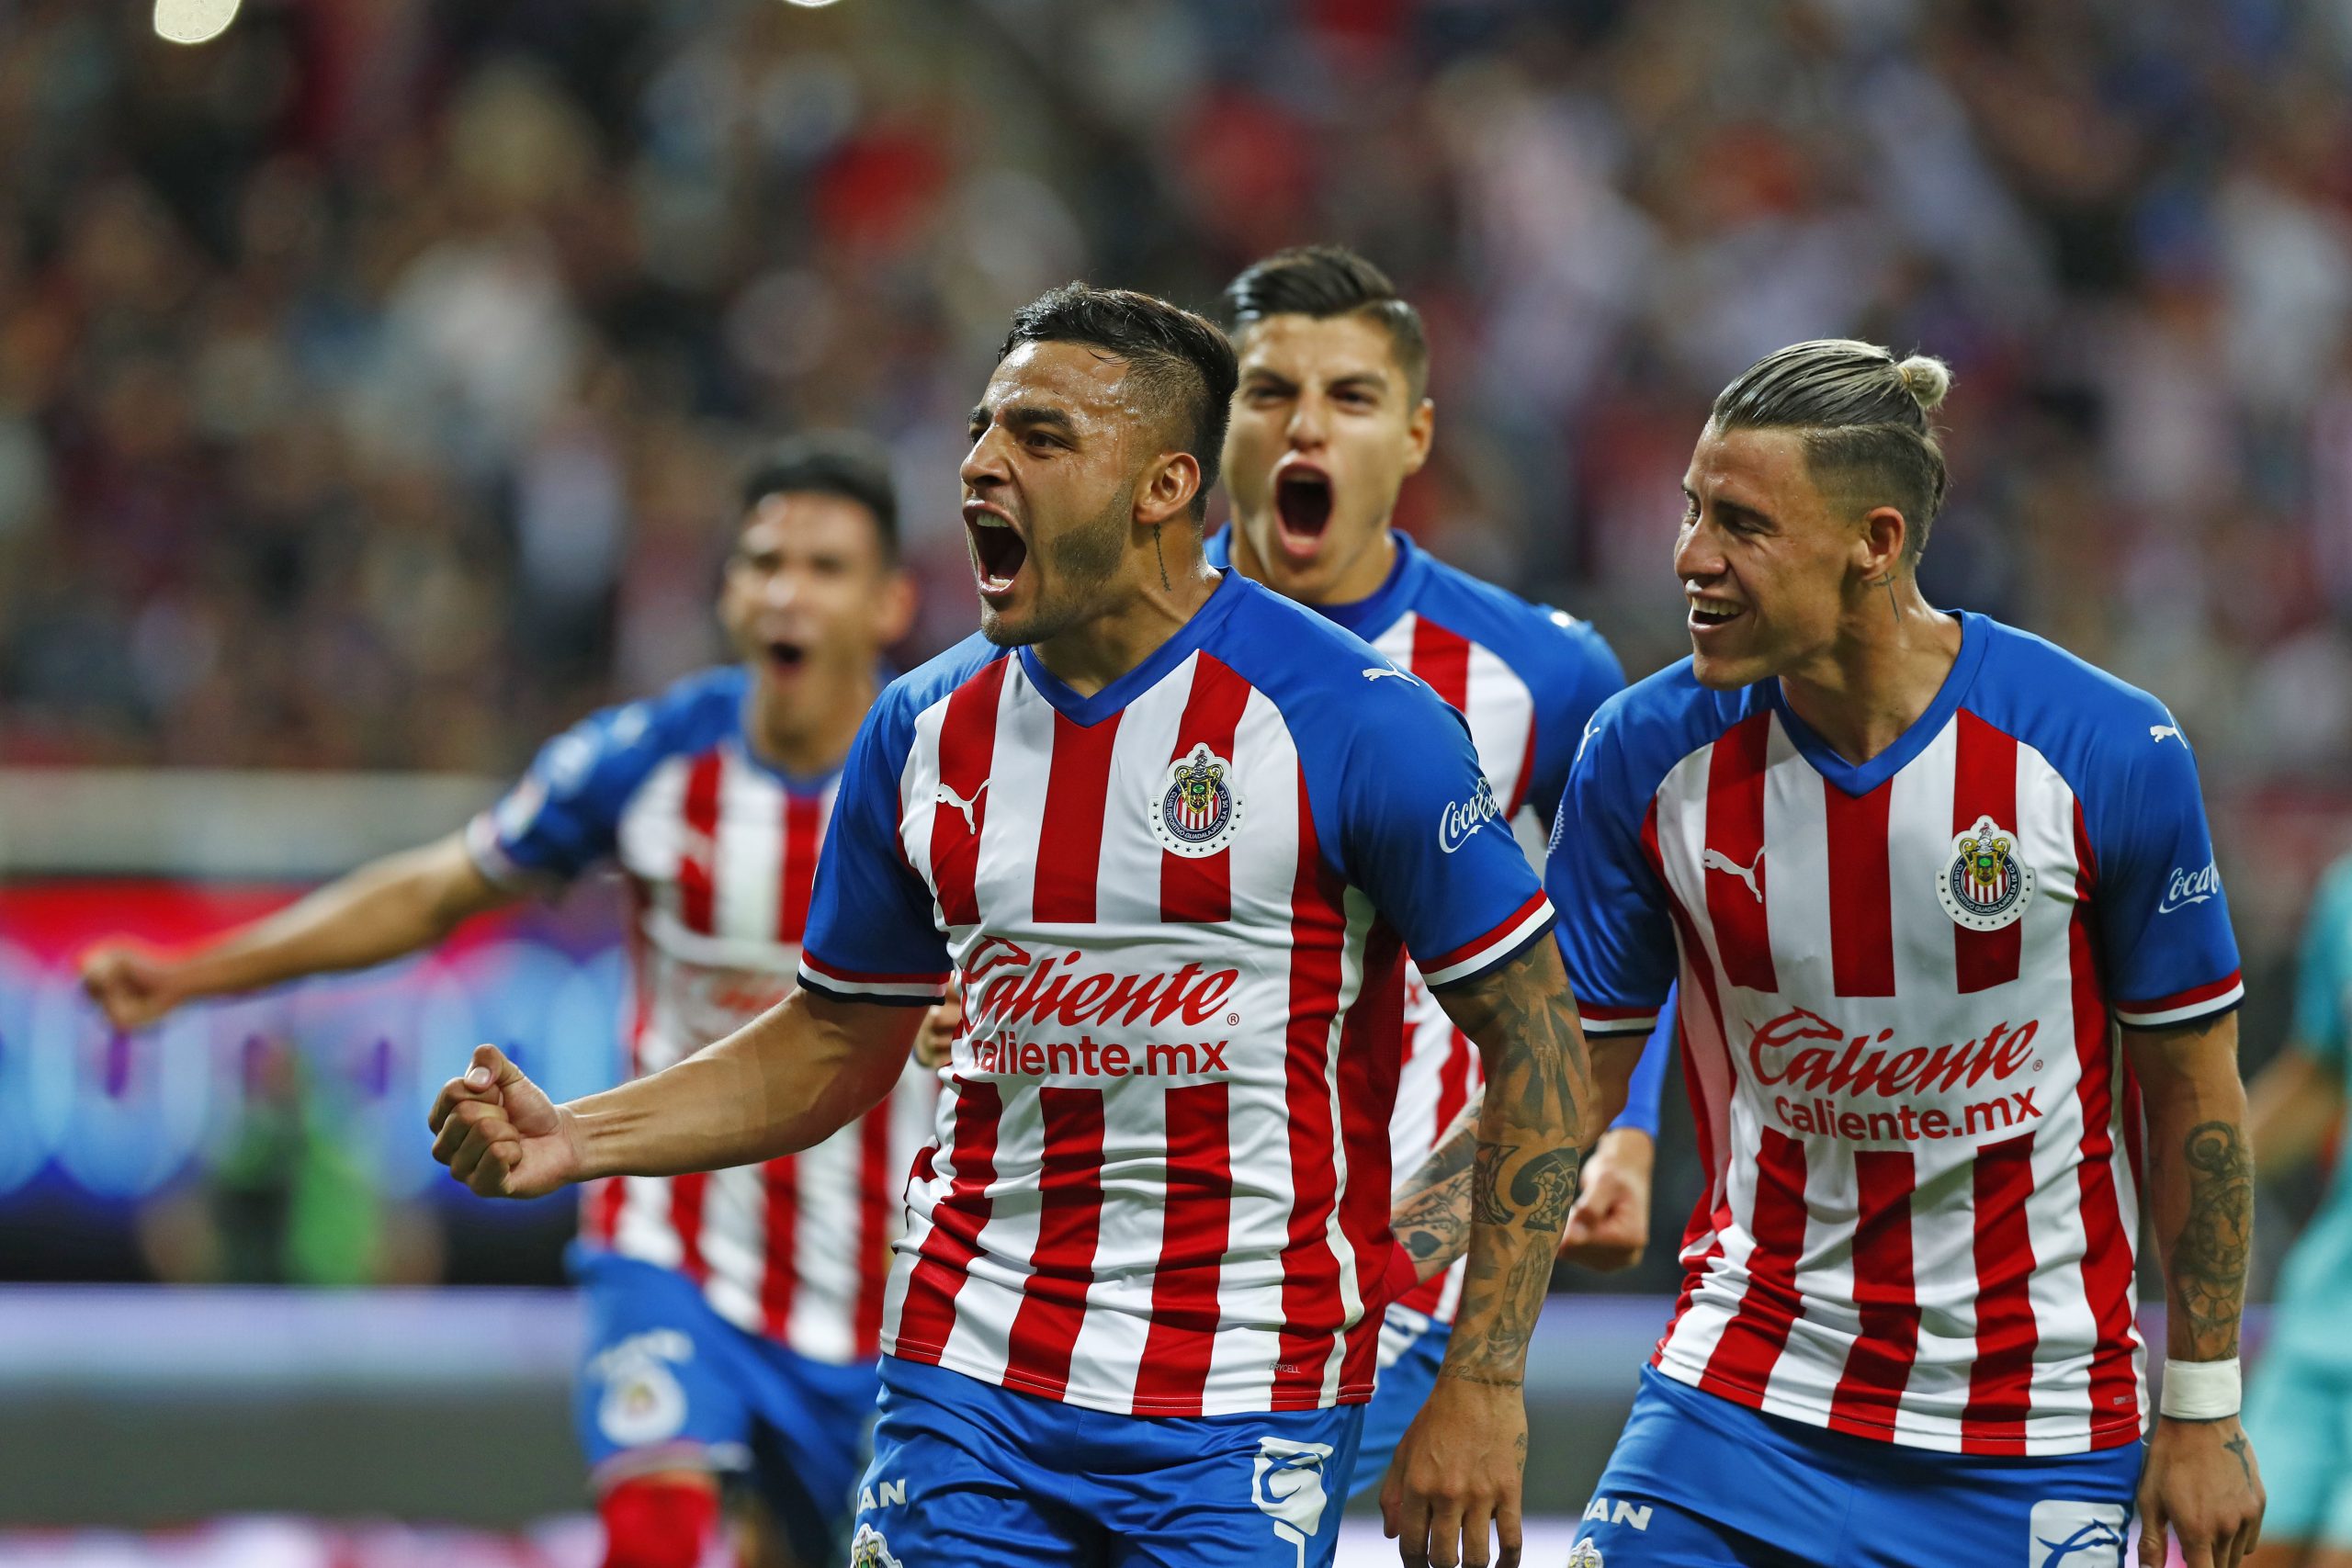 Chivas Vs Tigres Chivas Es Campeon Revive La Final En Imagenes